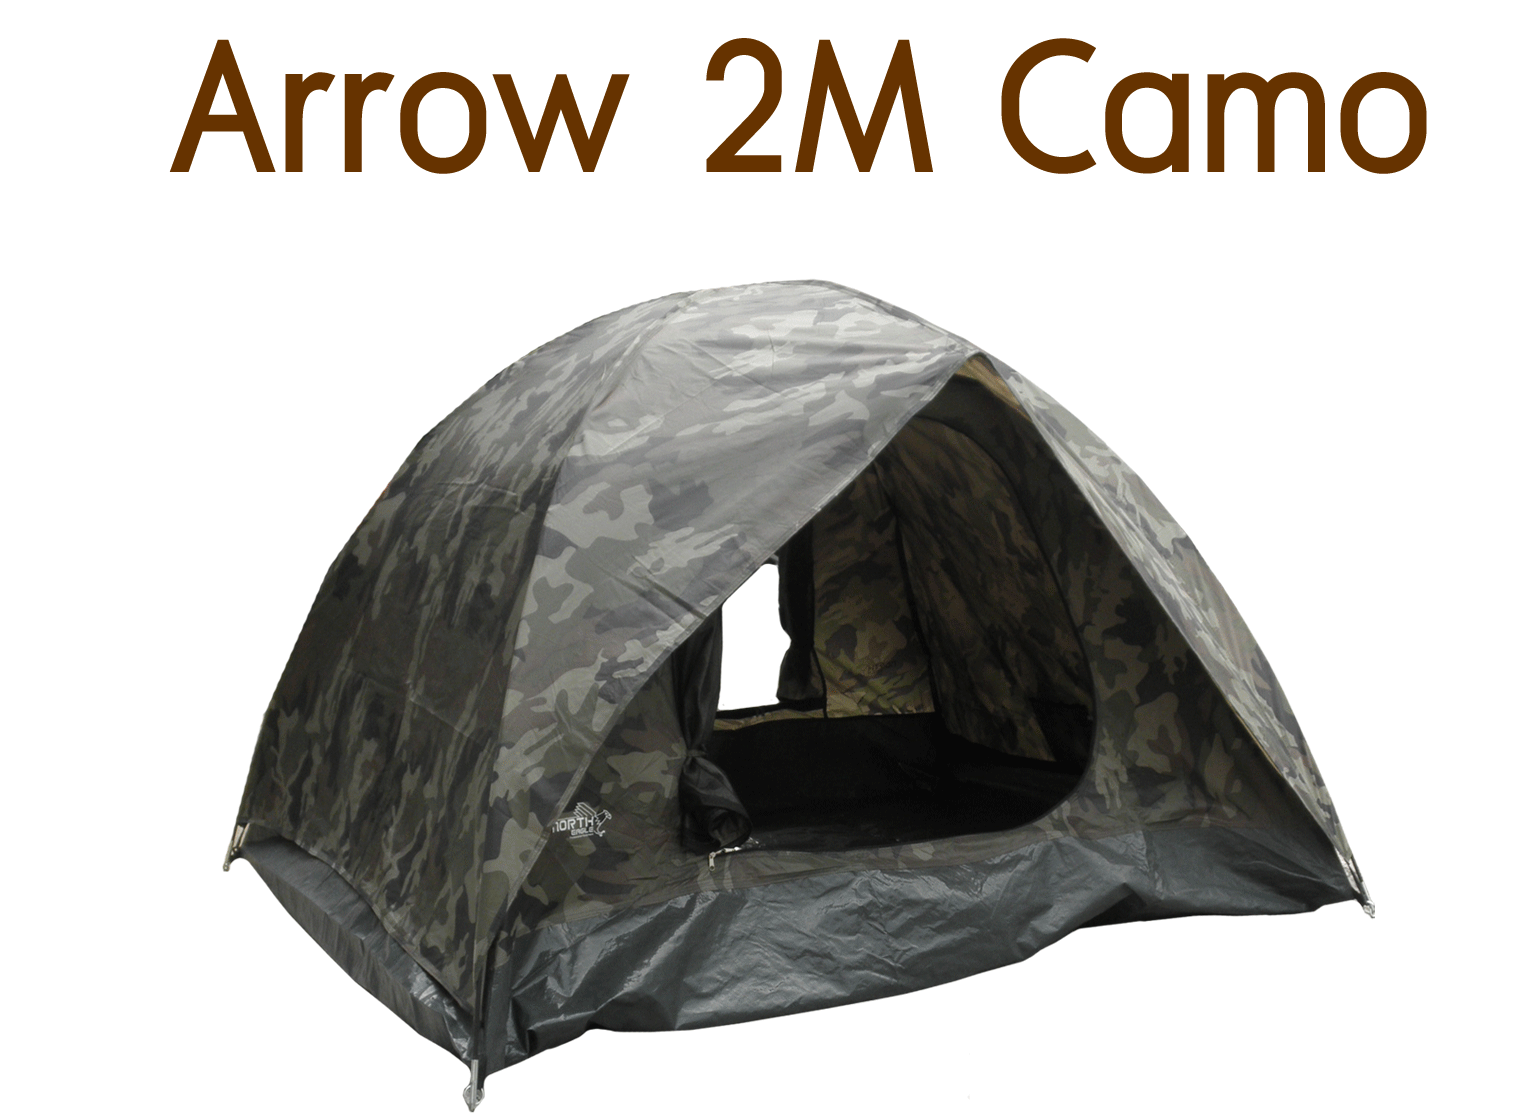 Arrow 2M Camo